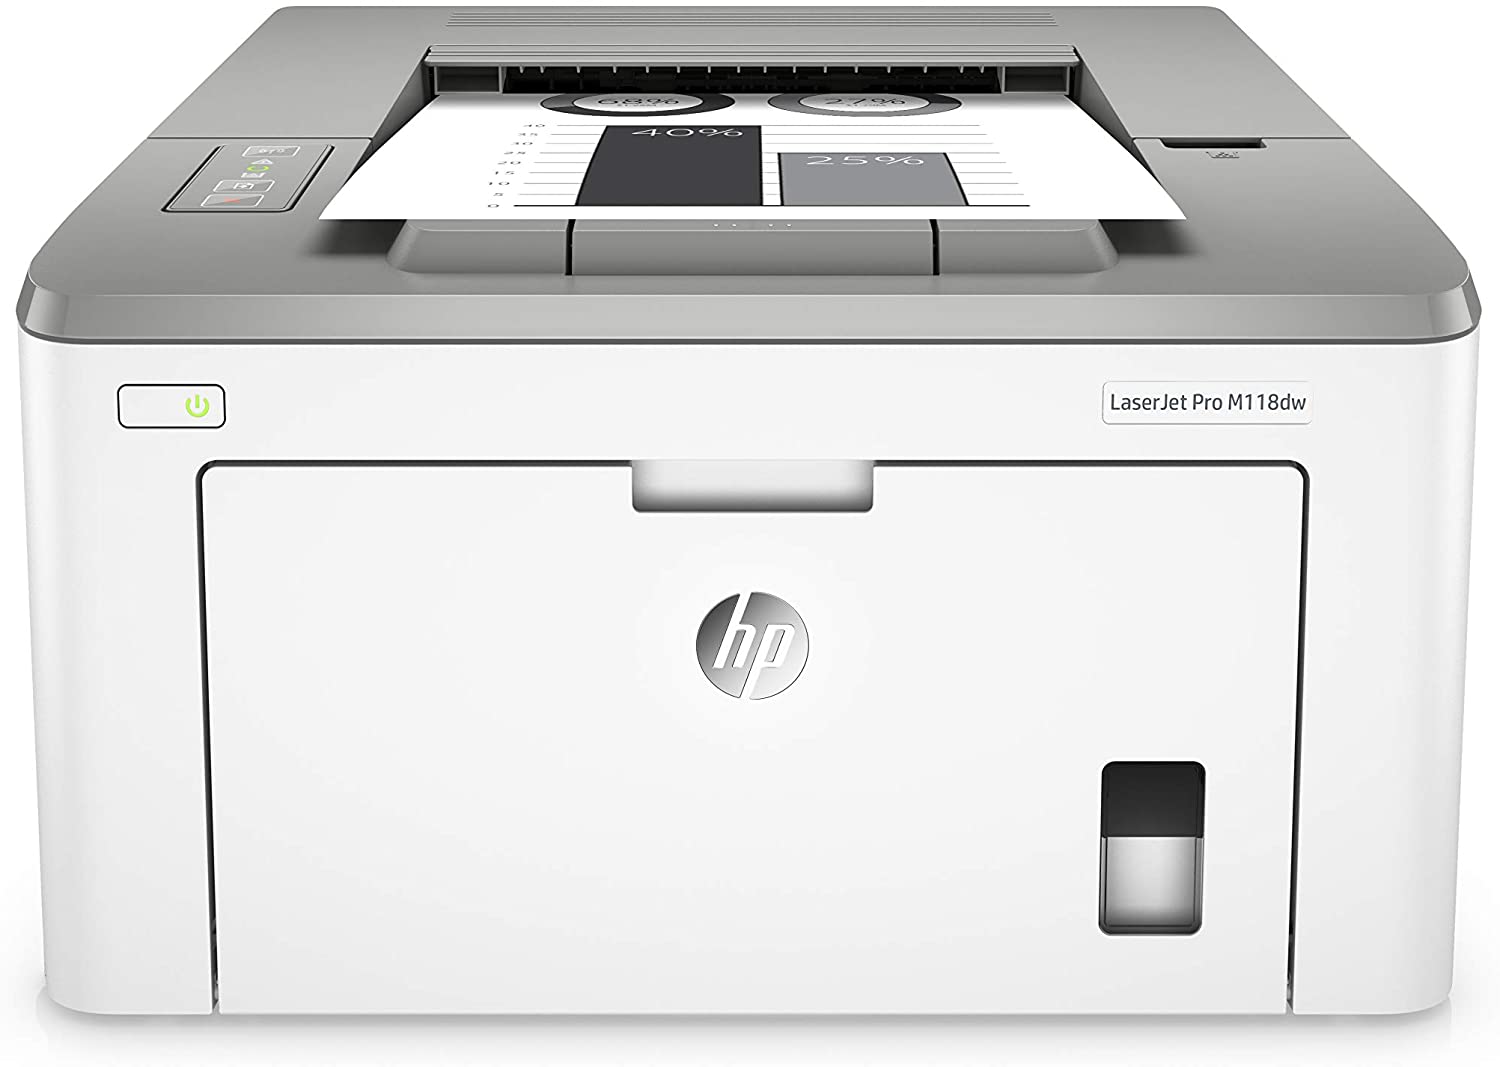 HP LaserJet Pro M118dw (4PA39A0) A4 Wireless Mono Laser Printer with Wi-Fi® Direct Printing - White uk reviews